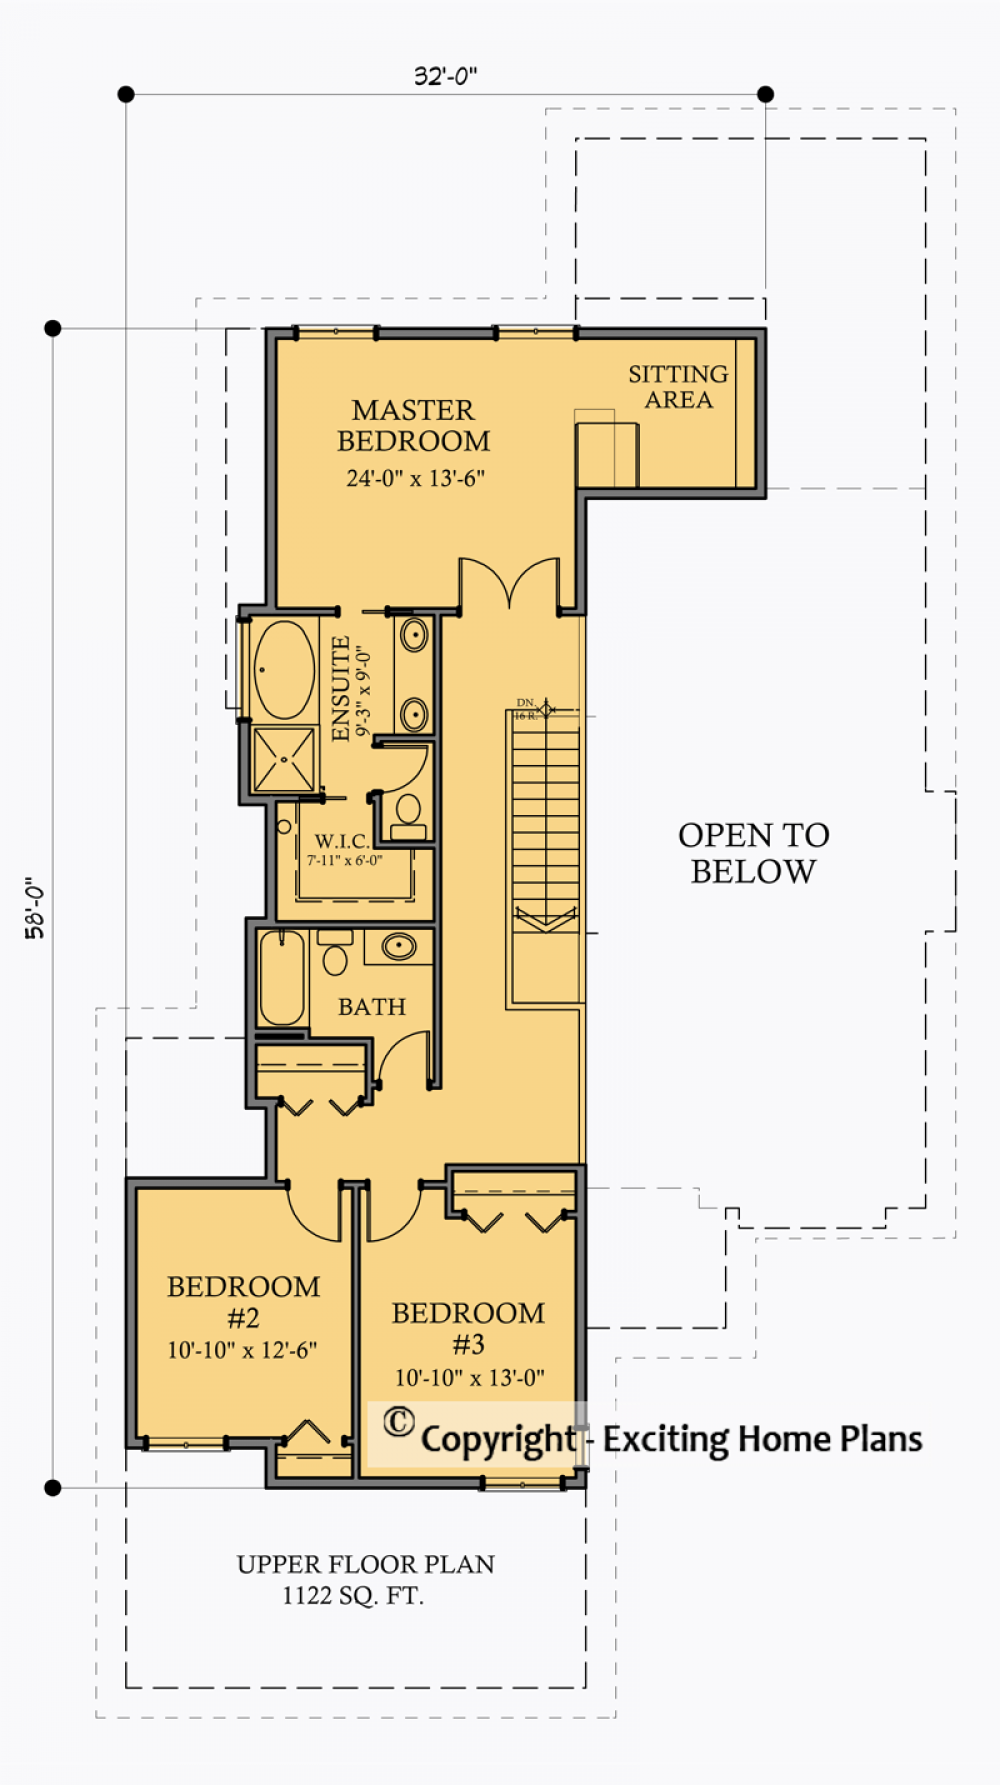 House Plan E1007-10 Upper Floor Plan